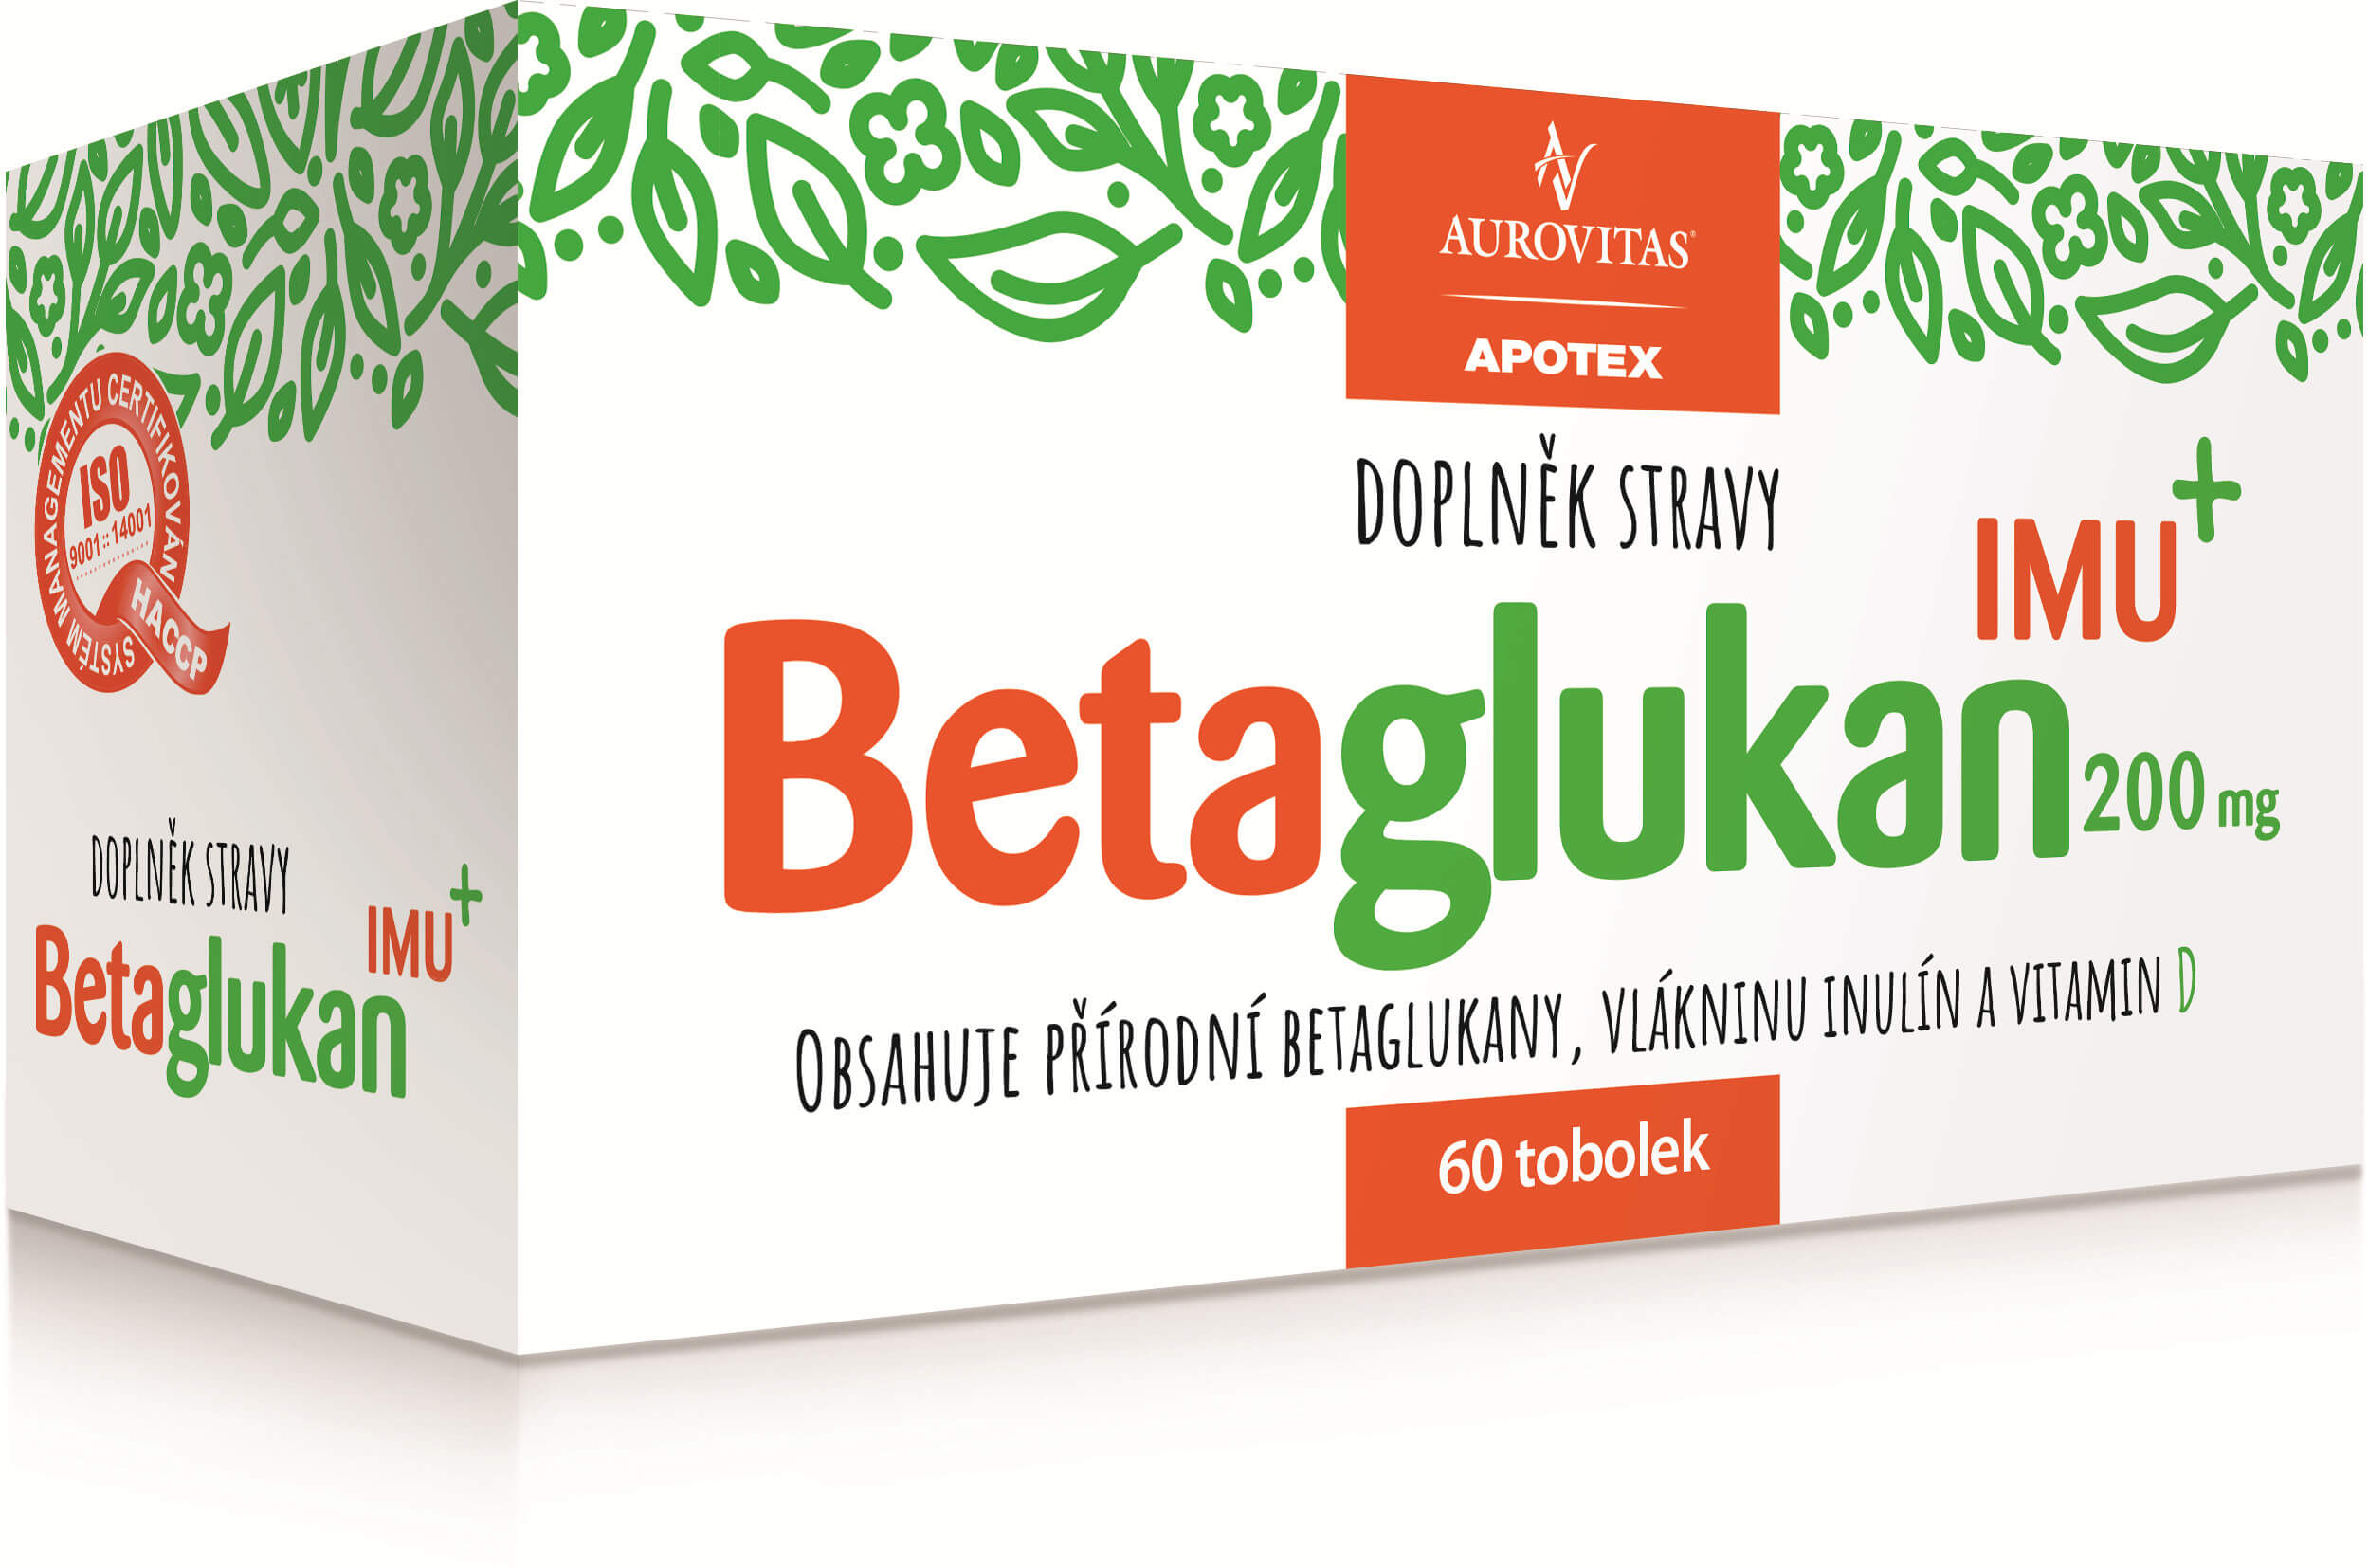 Zobrazit detail výrobku Aurovitas Betaglukan IMU 200 mg 60 tob. + 2 měsíce na vrácení zboží